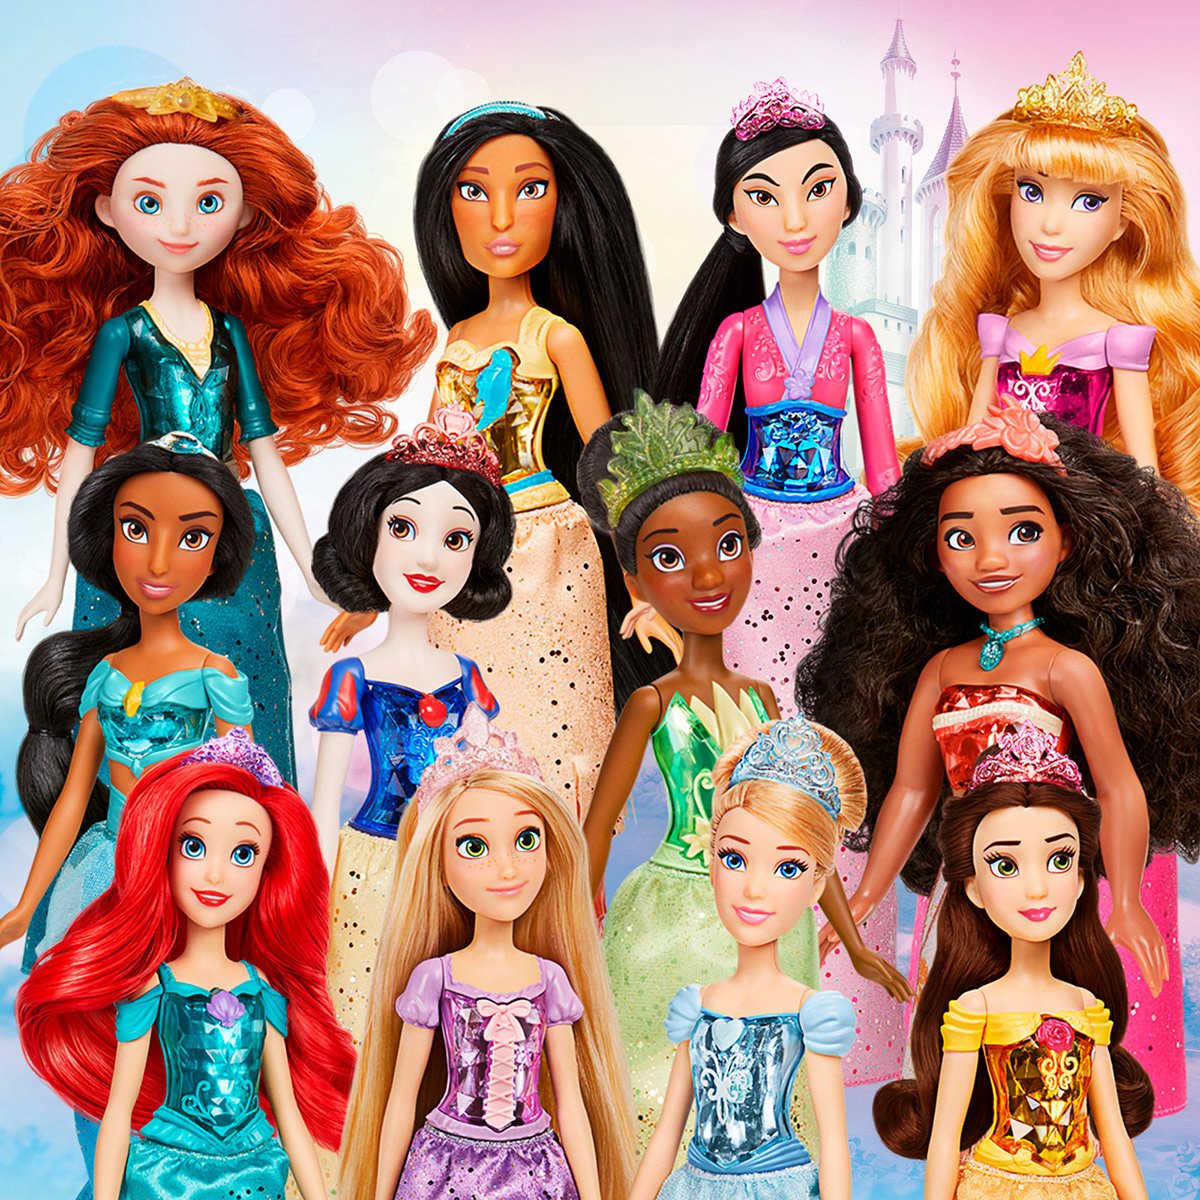 Acheter poupée Disney Princesses poussière d'étoiles : Tiana